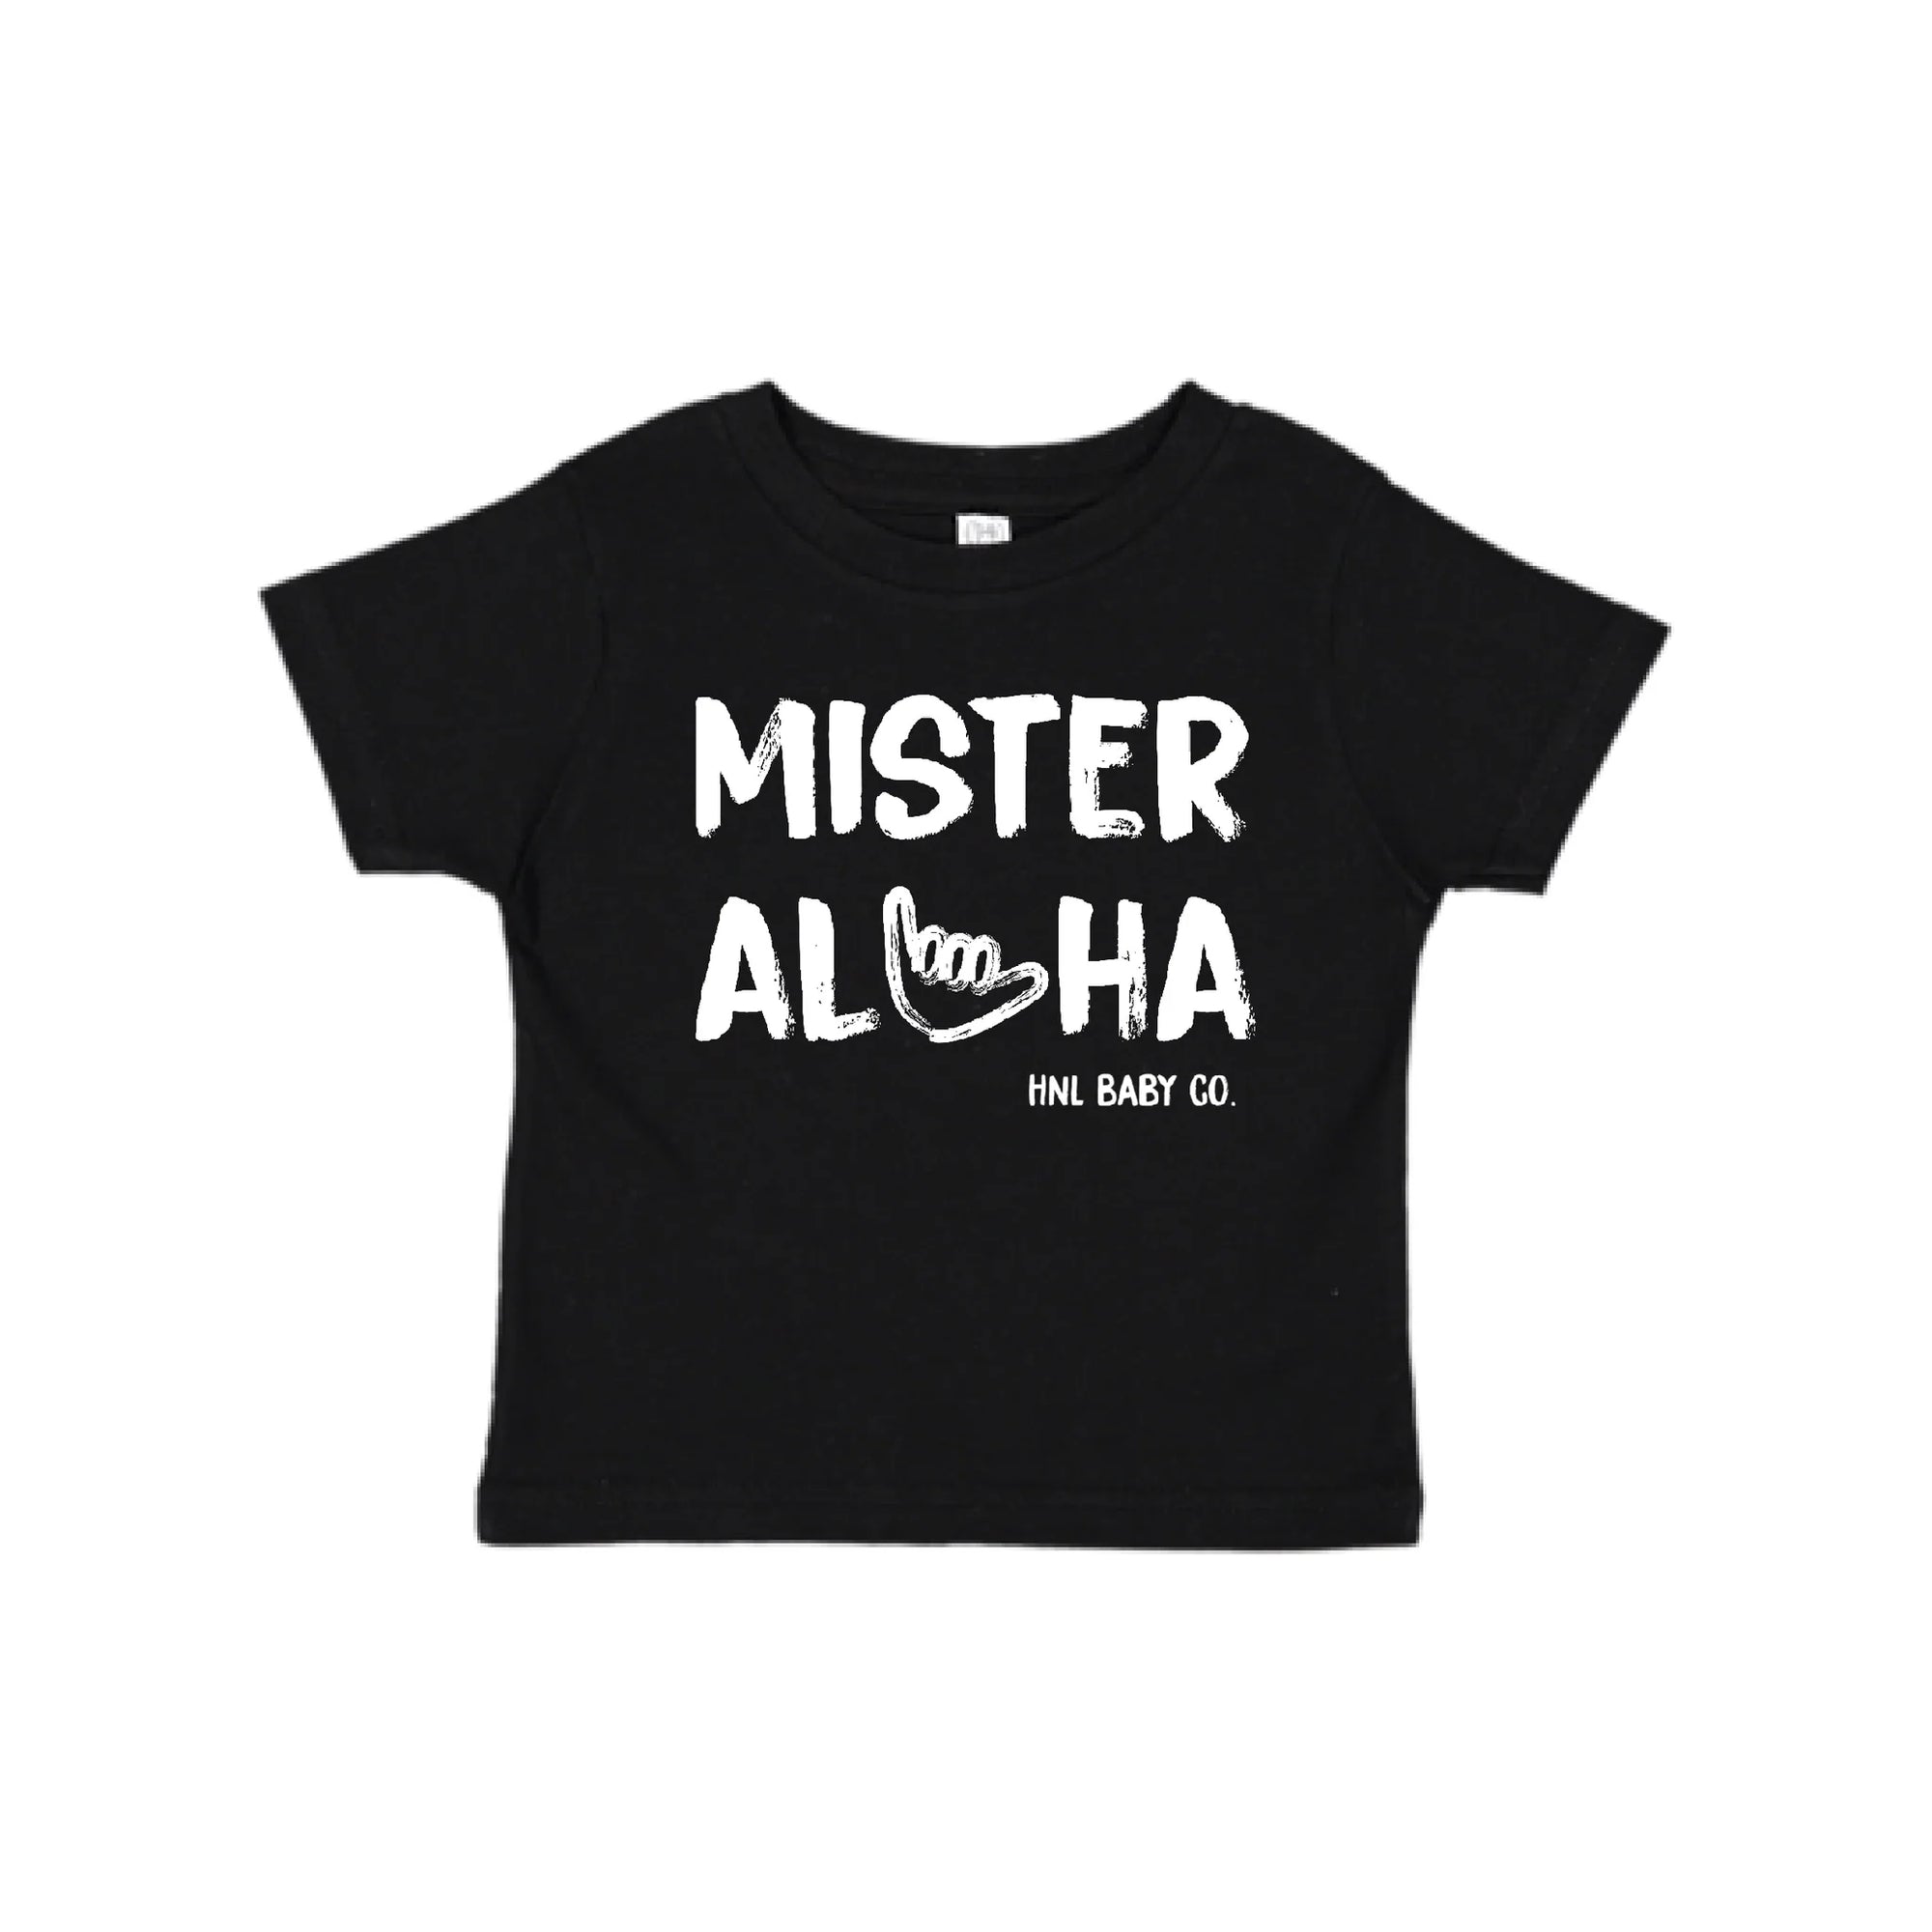 Pop-Up Mākeke - Honolulu Baby Co. - Mister Aloha Keiki T-Shirt - Black - Front View